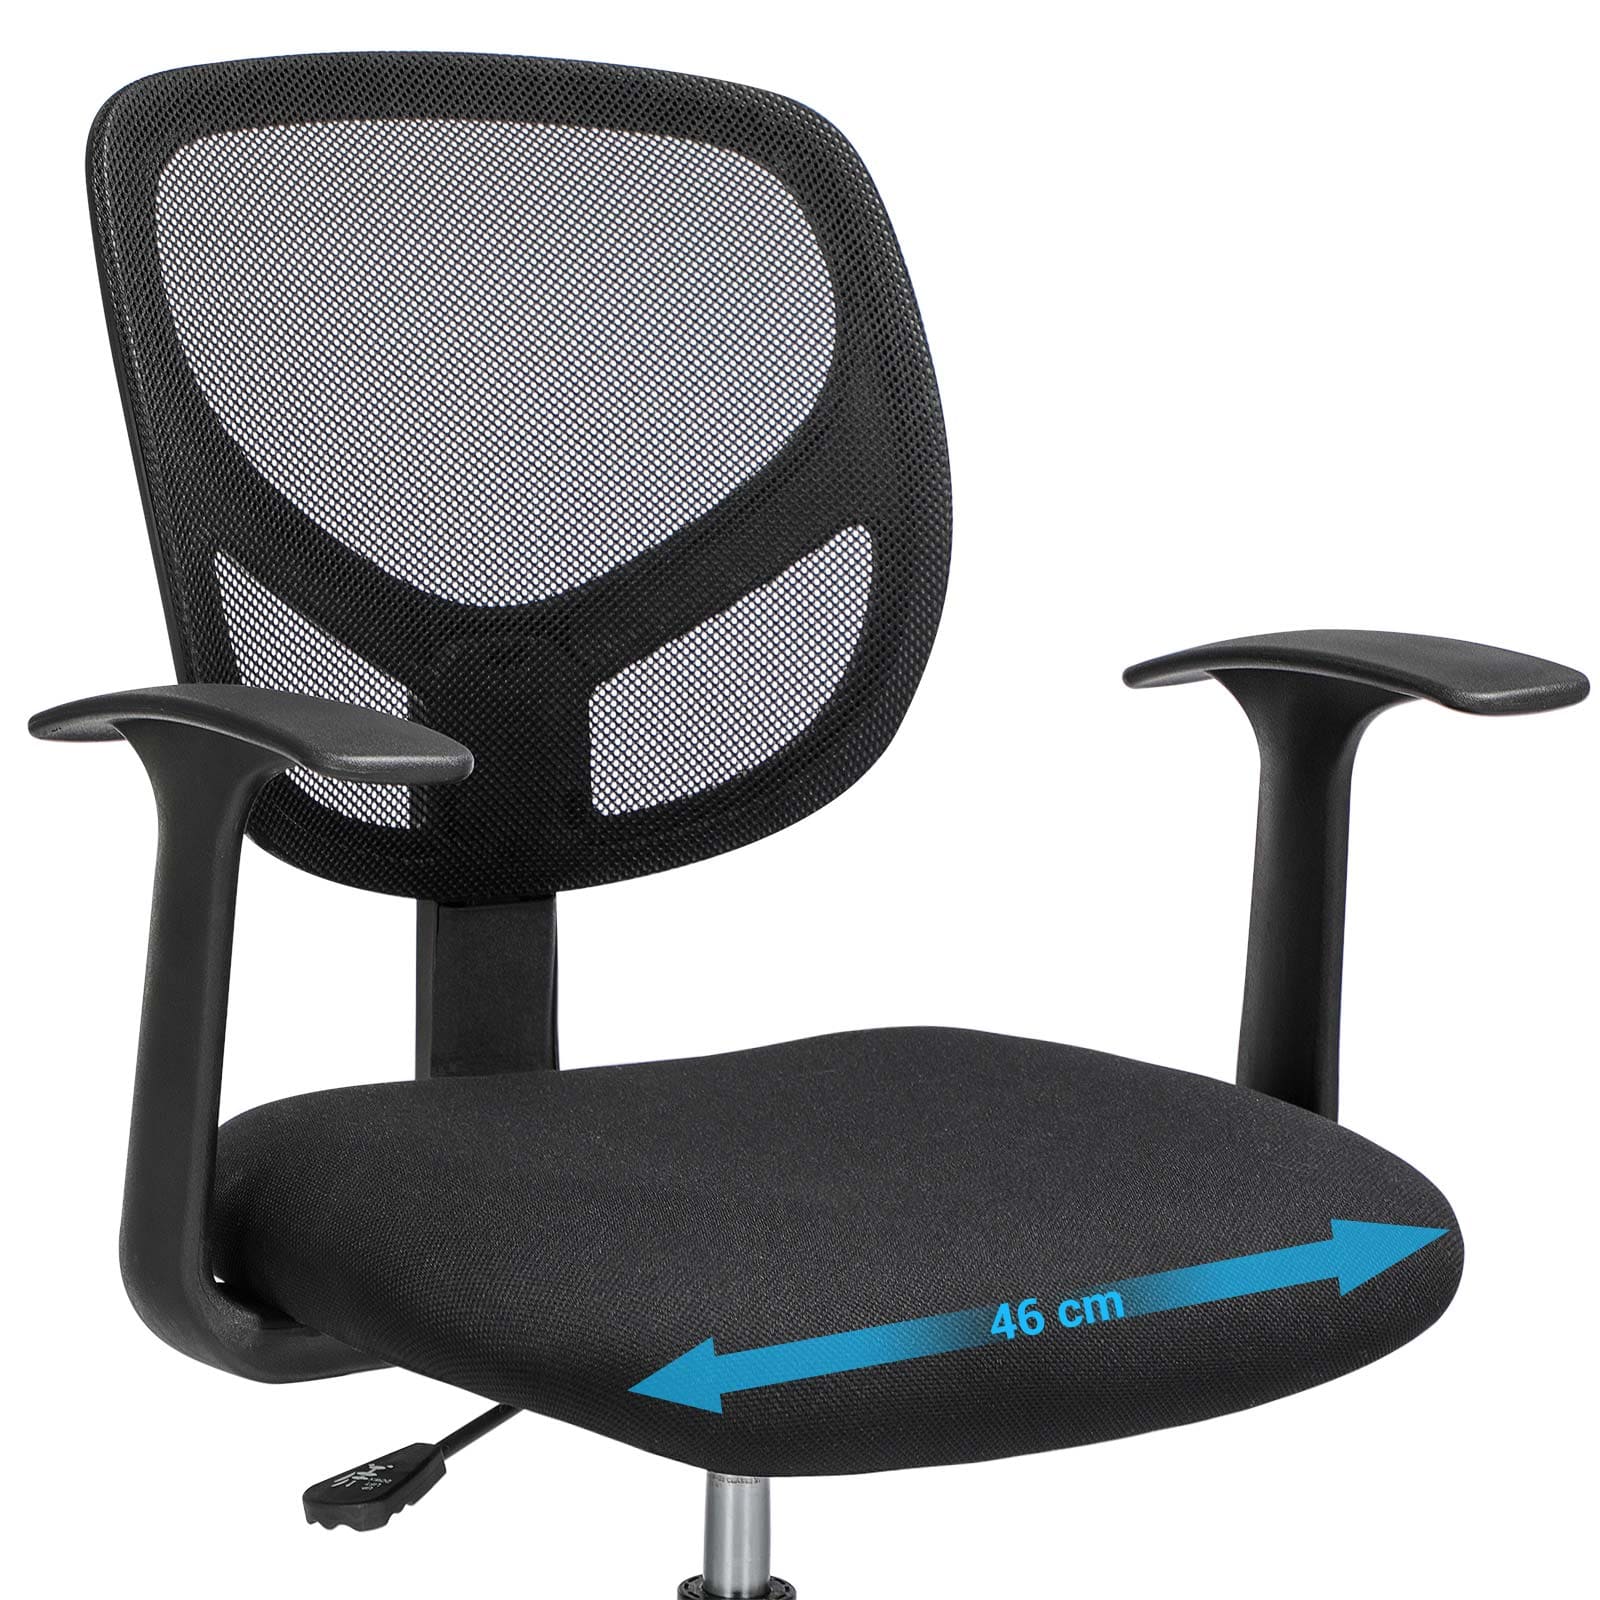 SONGMICS - Chaise de bureau, Assise large confortable - 46 cm